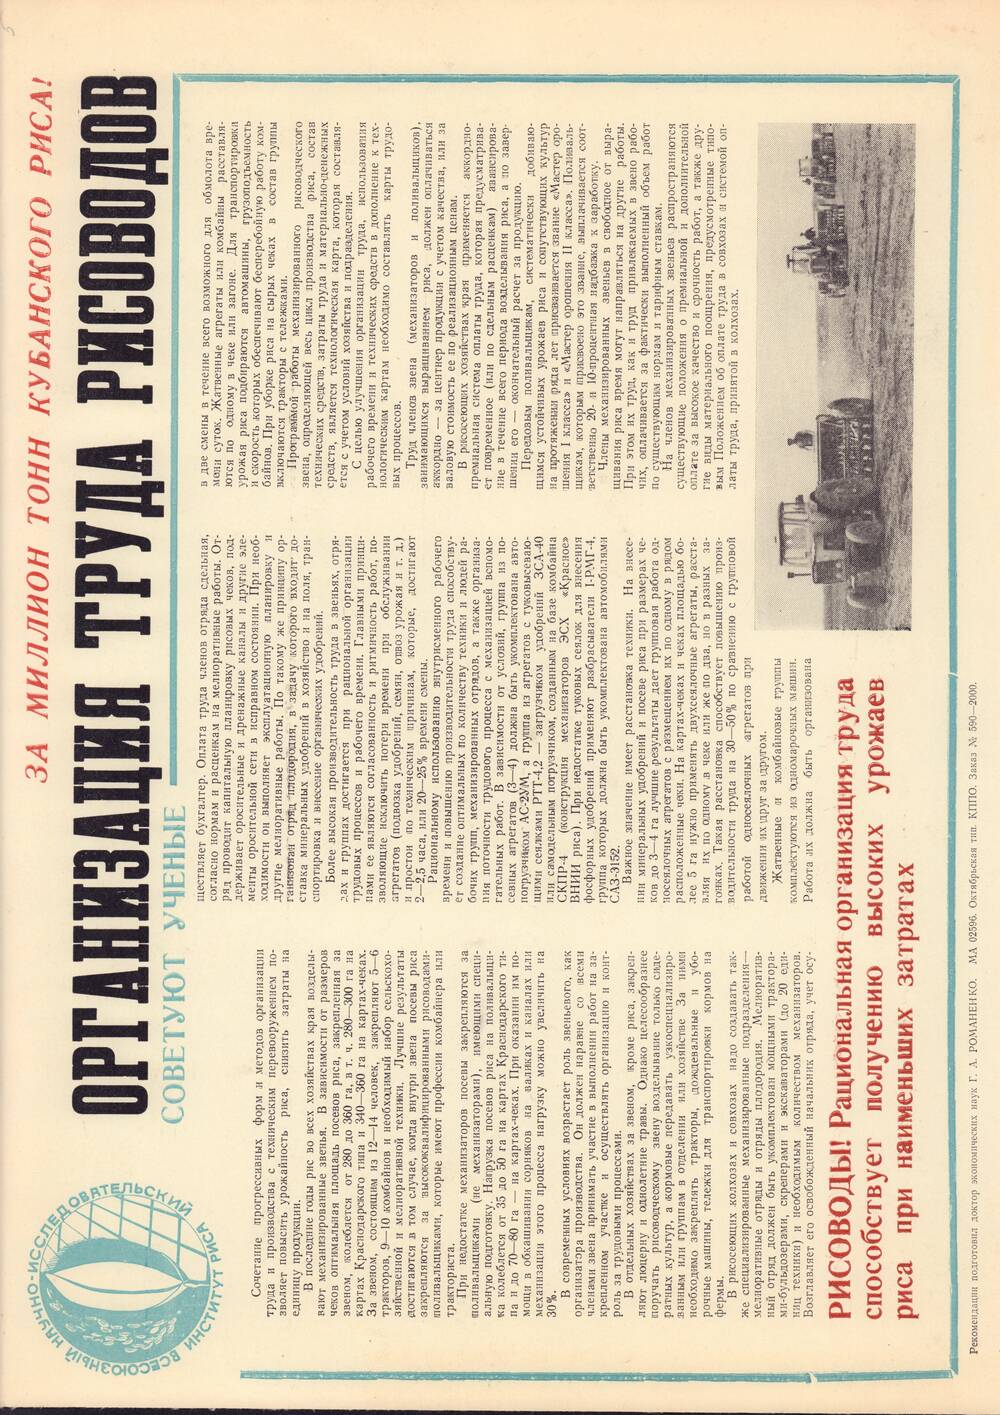 Плакат-рекомендация Всесоюзного научно-исследовательского института риса Организация труда рисоводов. Зак. 590-2000. 1970 - 1980 годы.